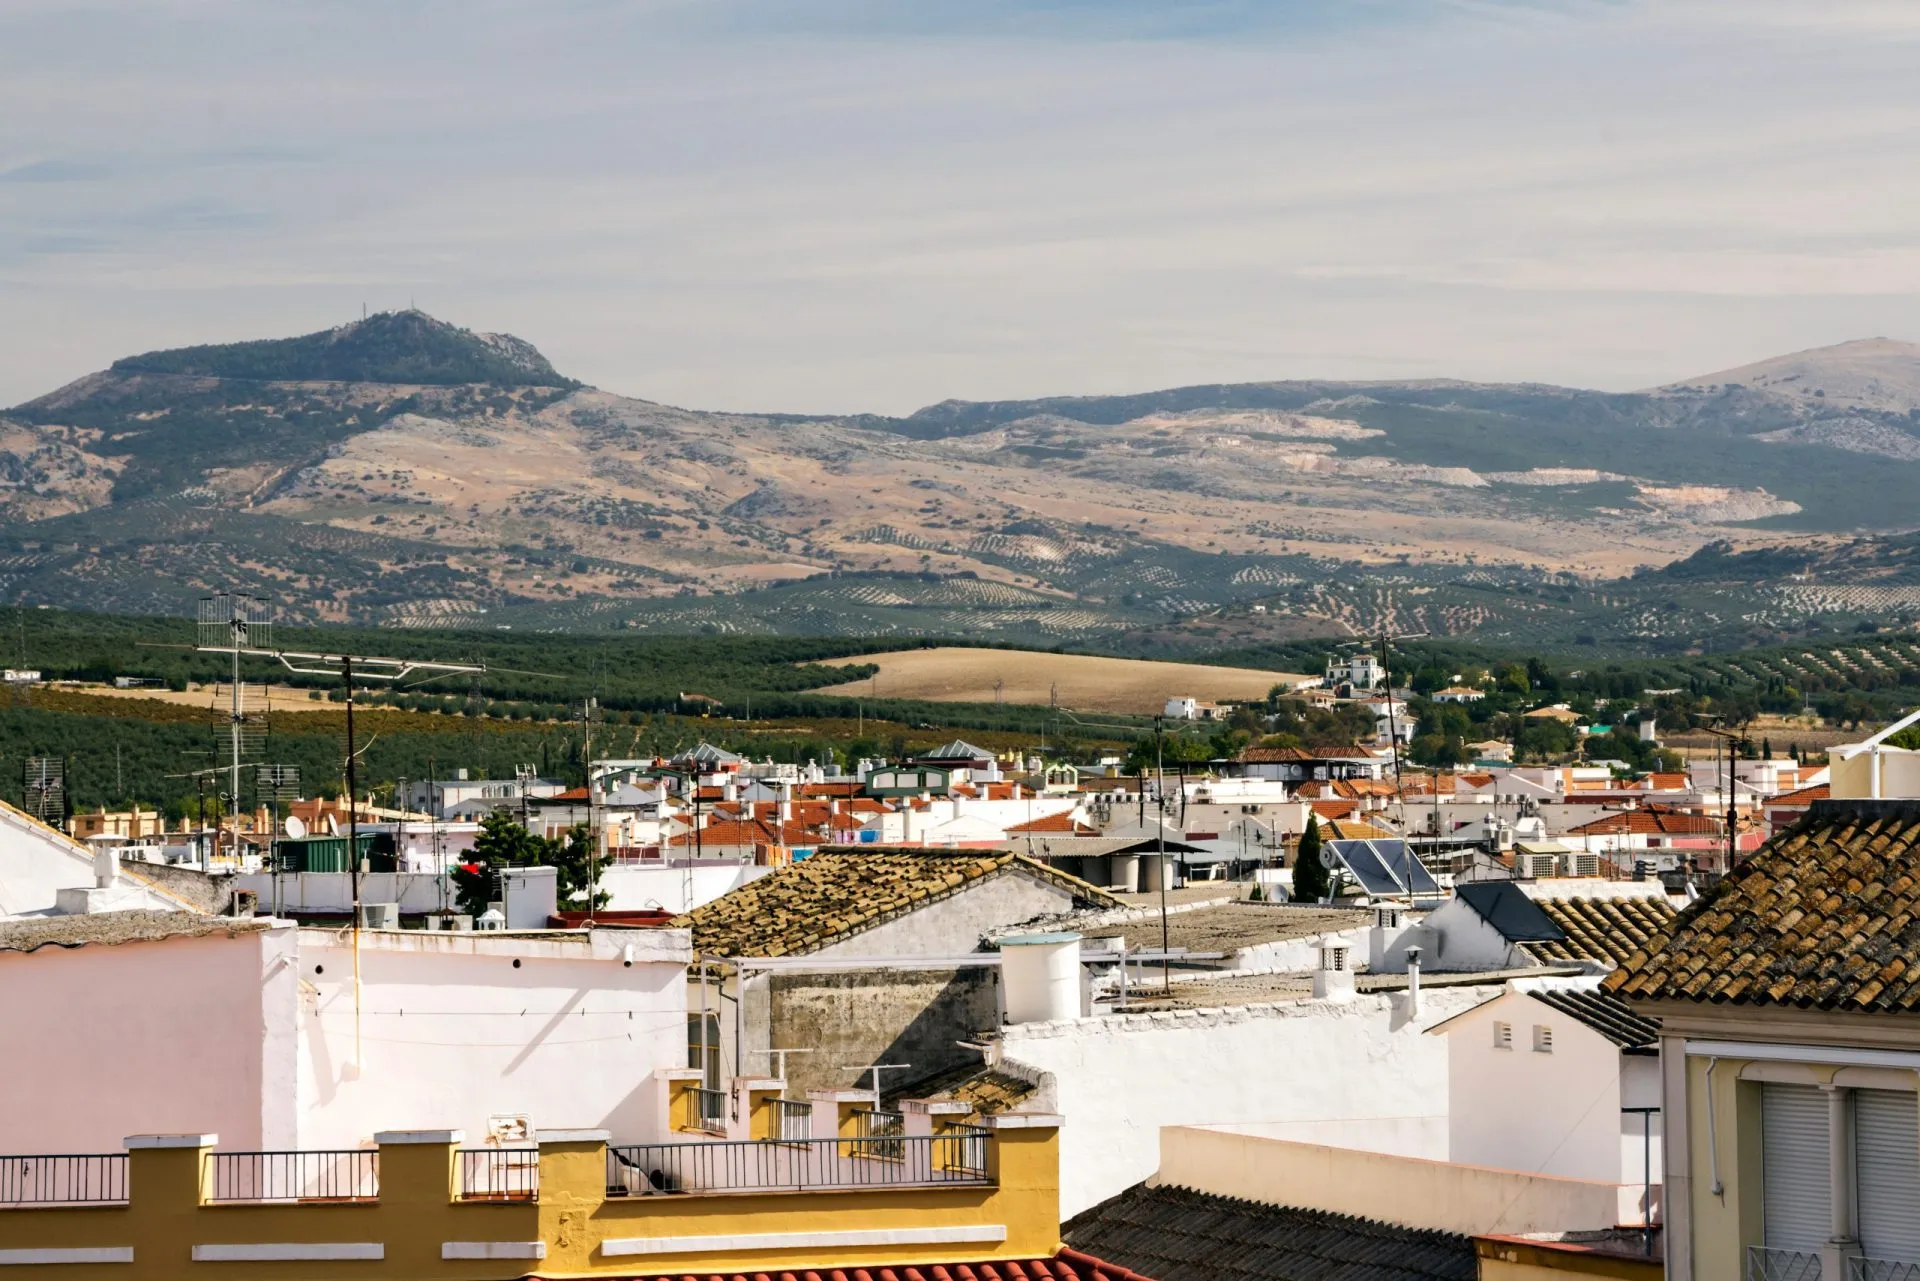 Lucena er en by og en spansk kommune i provinsen Córdoba, Andalusien. Den ligger i en højde af 487 meter og 67 kilometer fra provinshovedstaden Córdoba i Spanien.